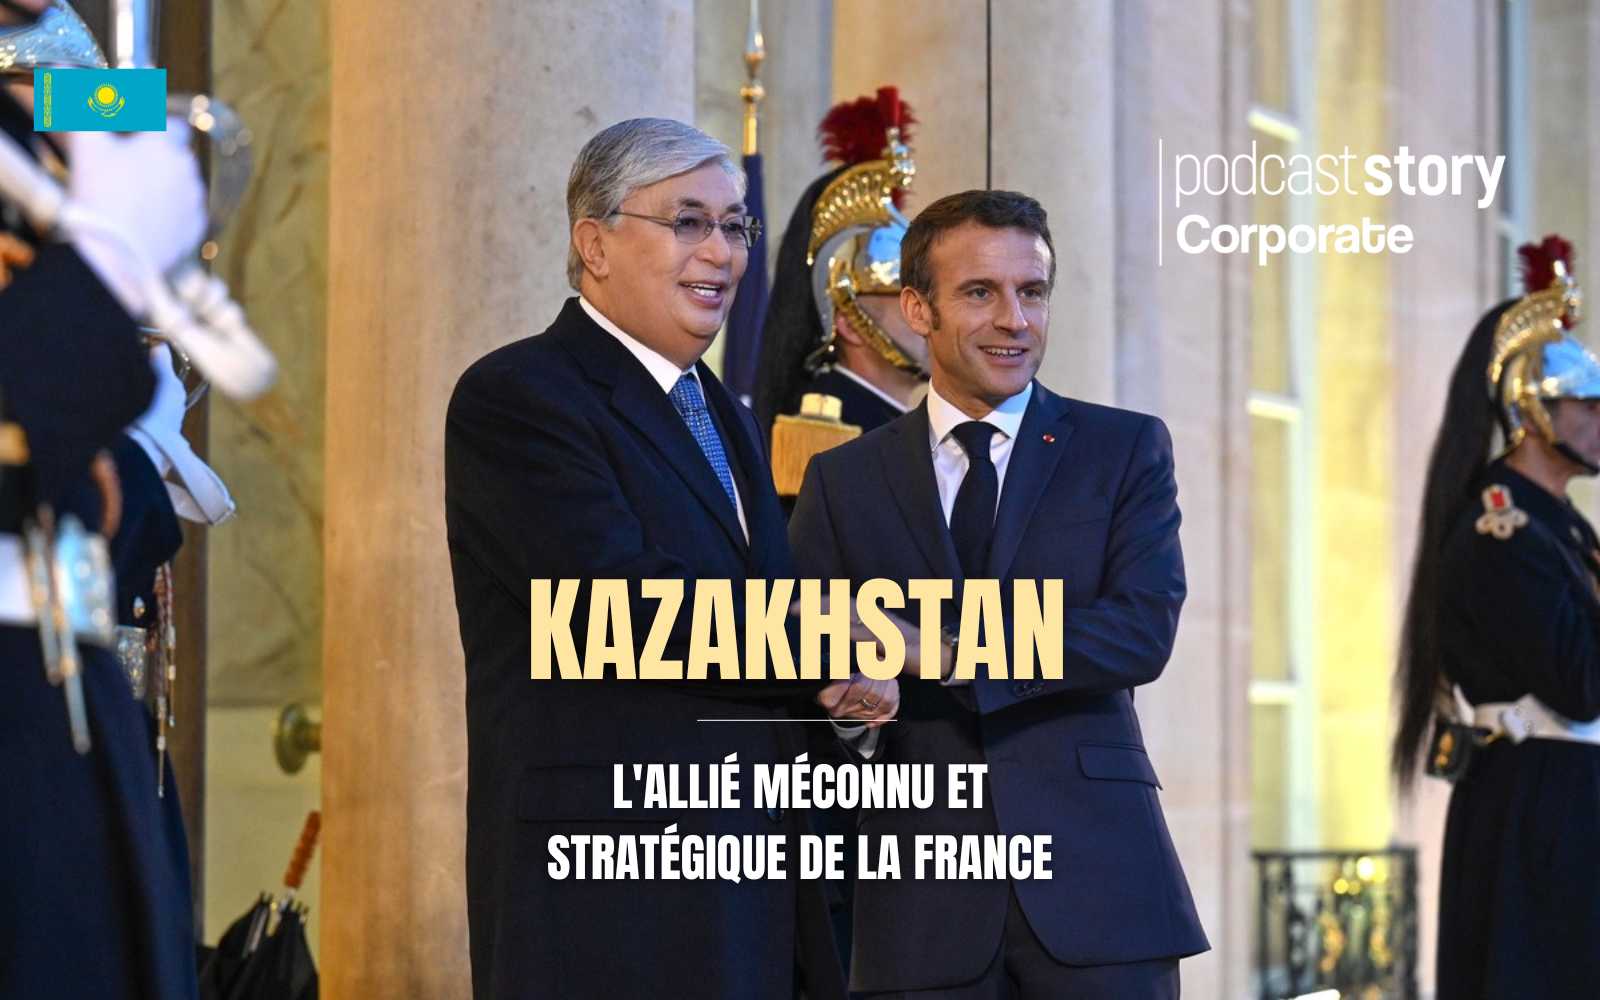 KAZAKHSTAN – L’ALLIÉ MÉCONNU ET STRATÉGIQUE DE LA FRANCE